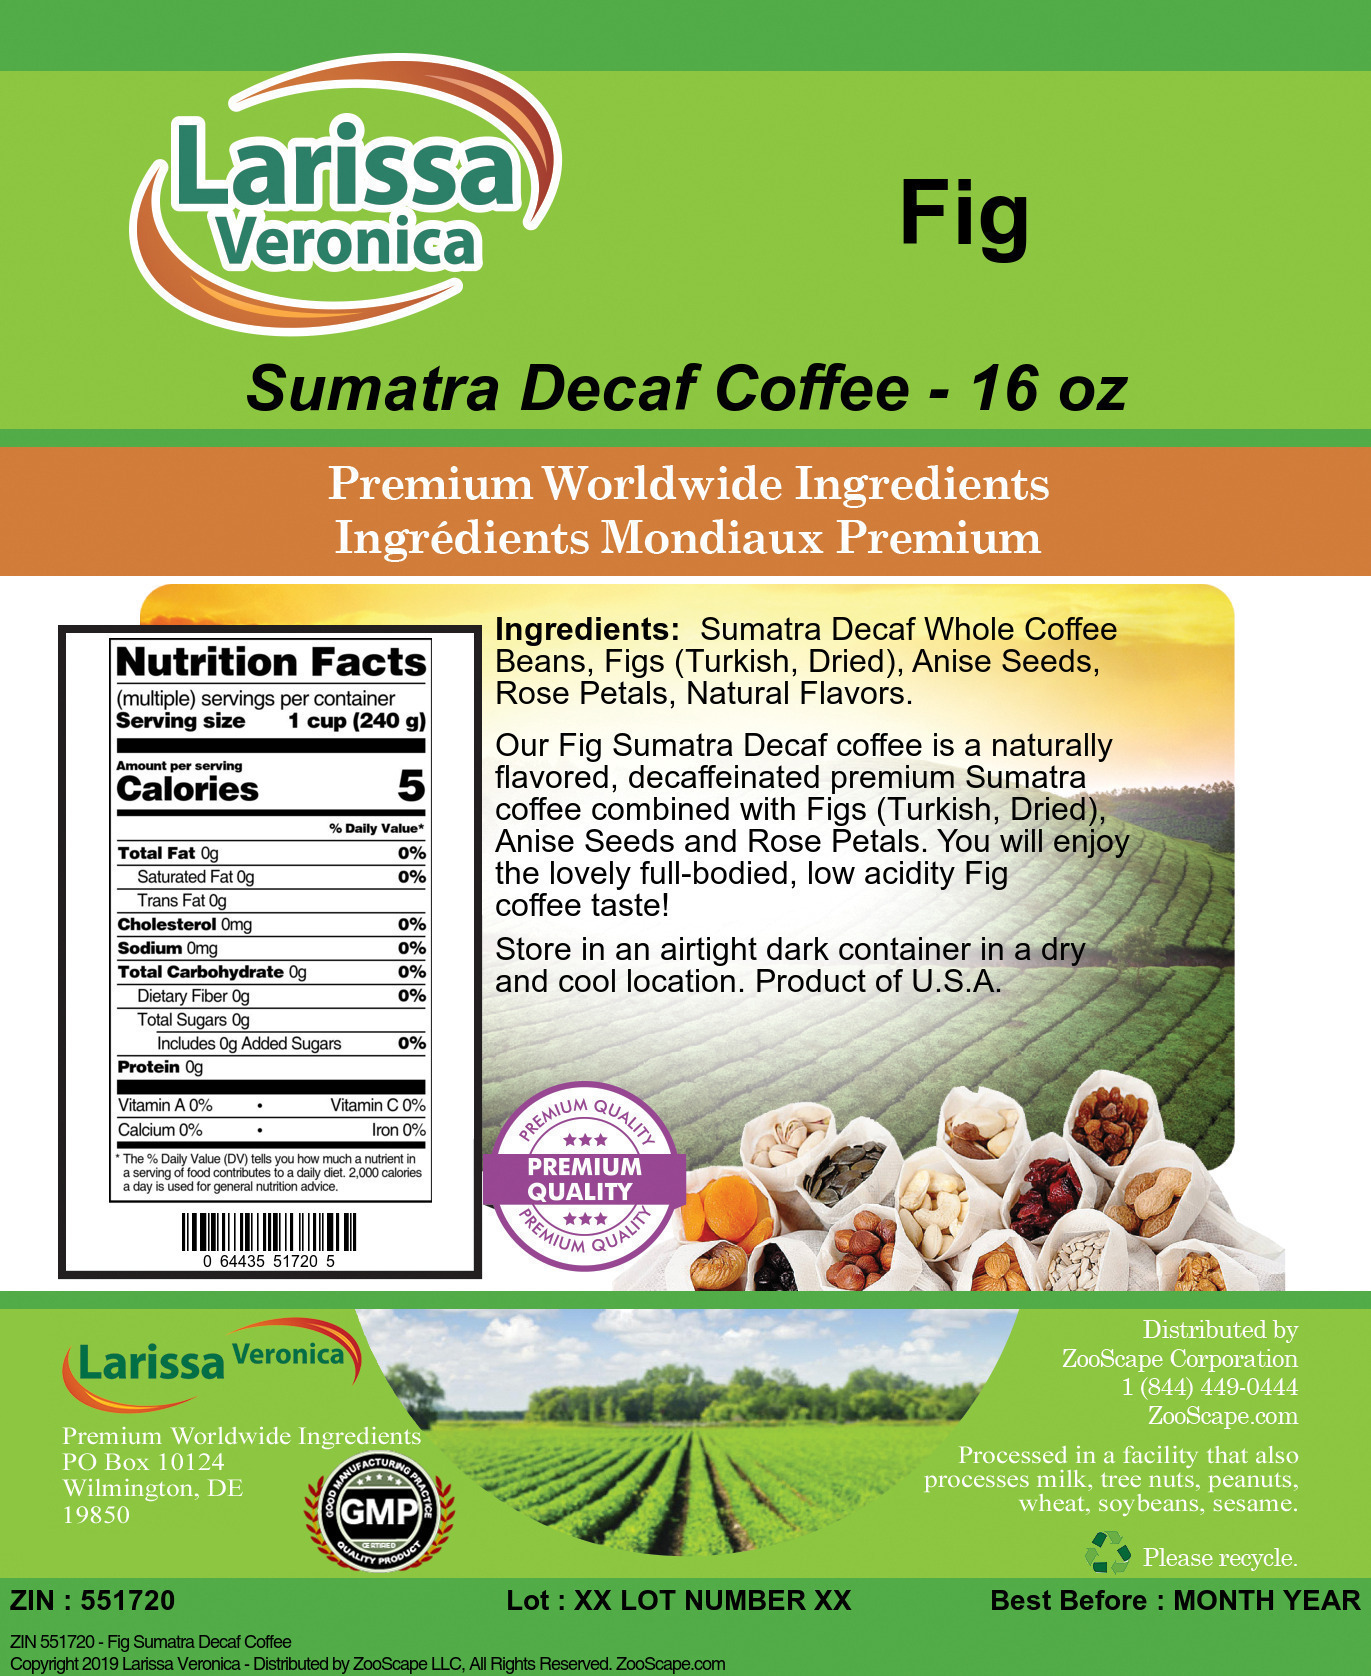 Fig Sumatra Decaf Coffee - Label